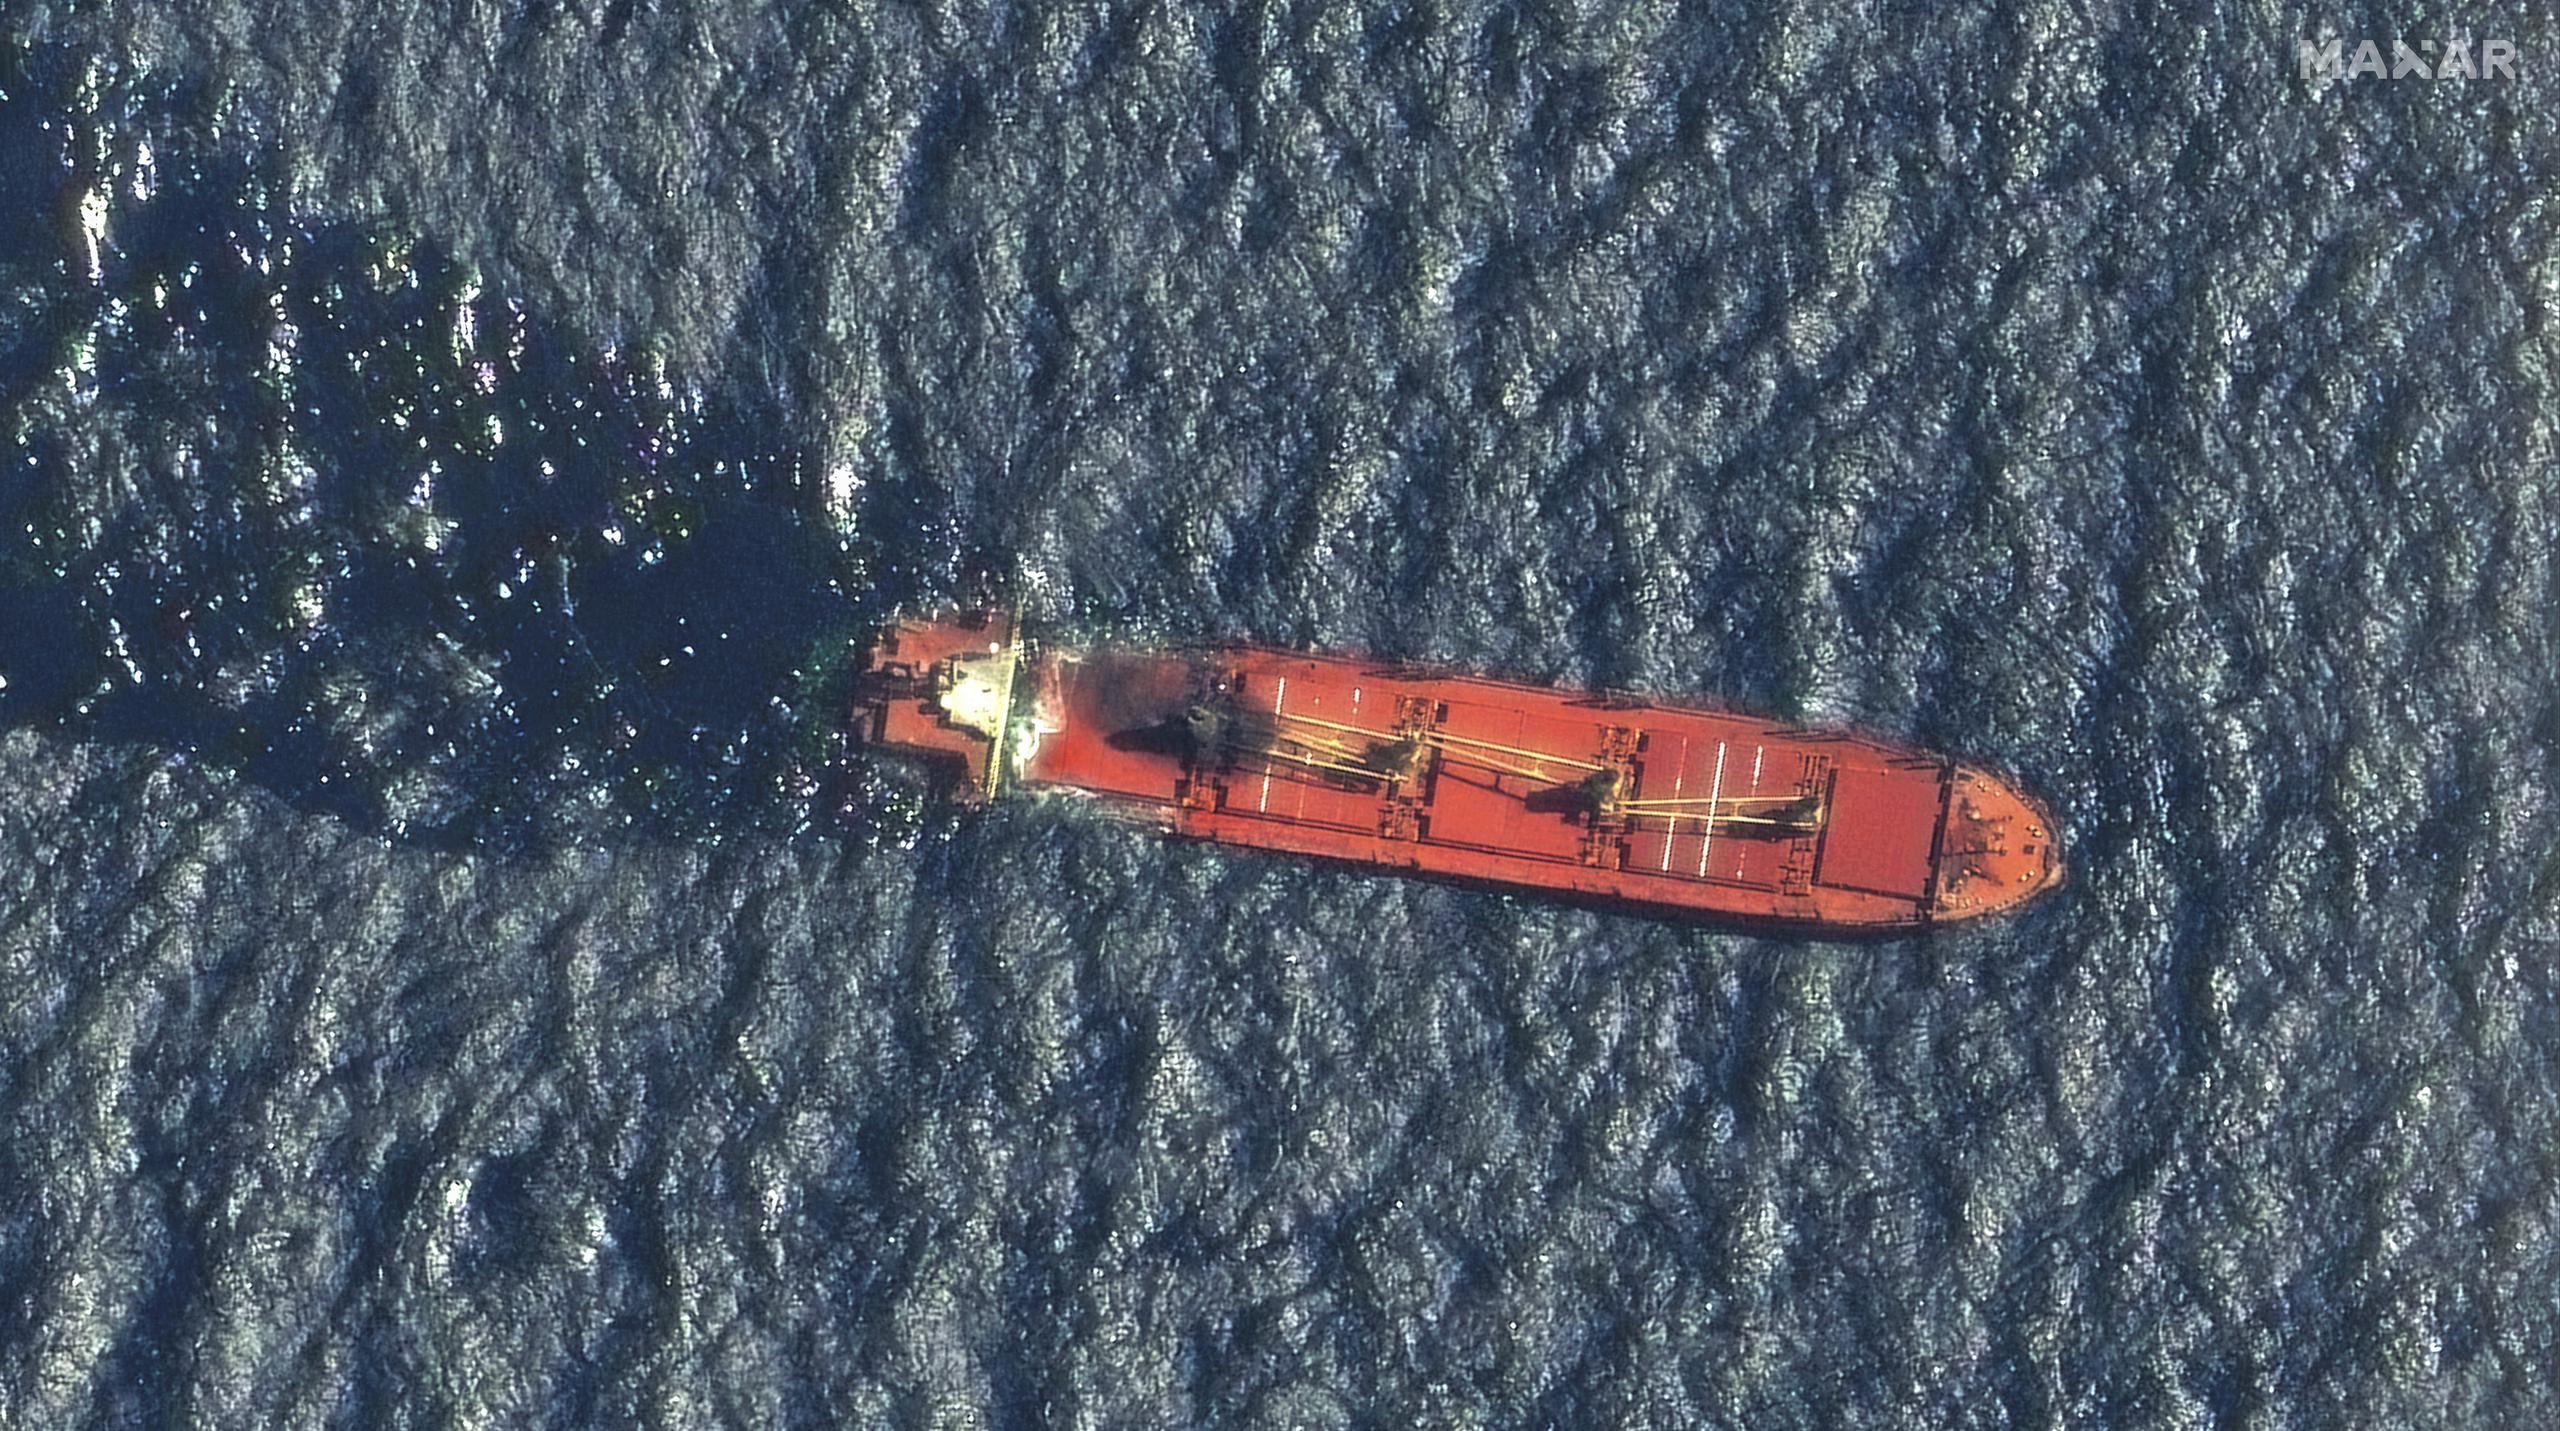 El Gobierno yemení anunció este sábado que el navío se hundió por completo debido a las condiciones meteorológicas en el mar y los fuertes vientos, y achacó el desastre a la falta de respuesta de la comunidad internacional para ayudar al Ejecutivo a reflotar el barco y vaciar su carga.